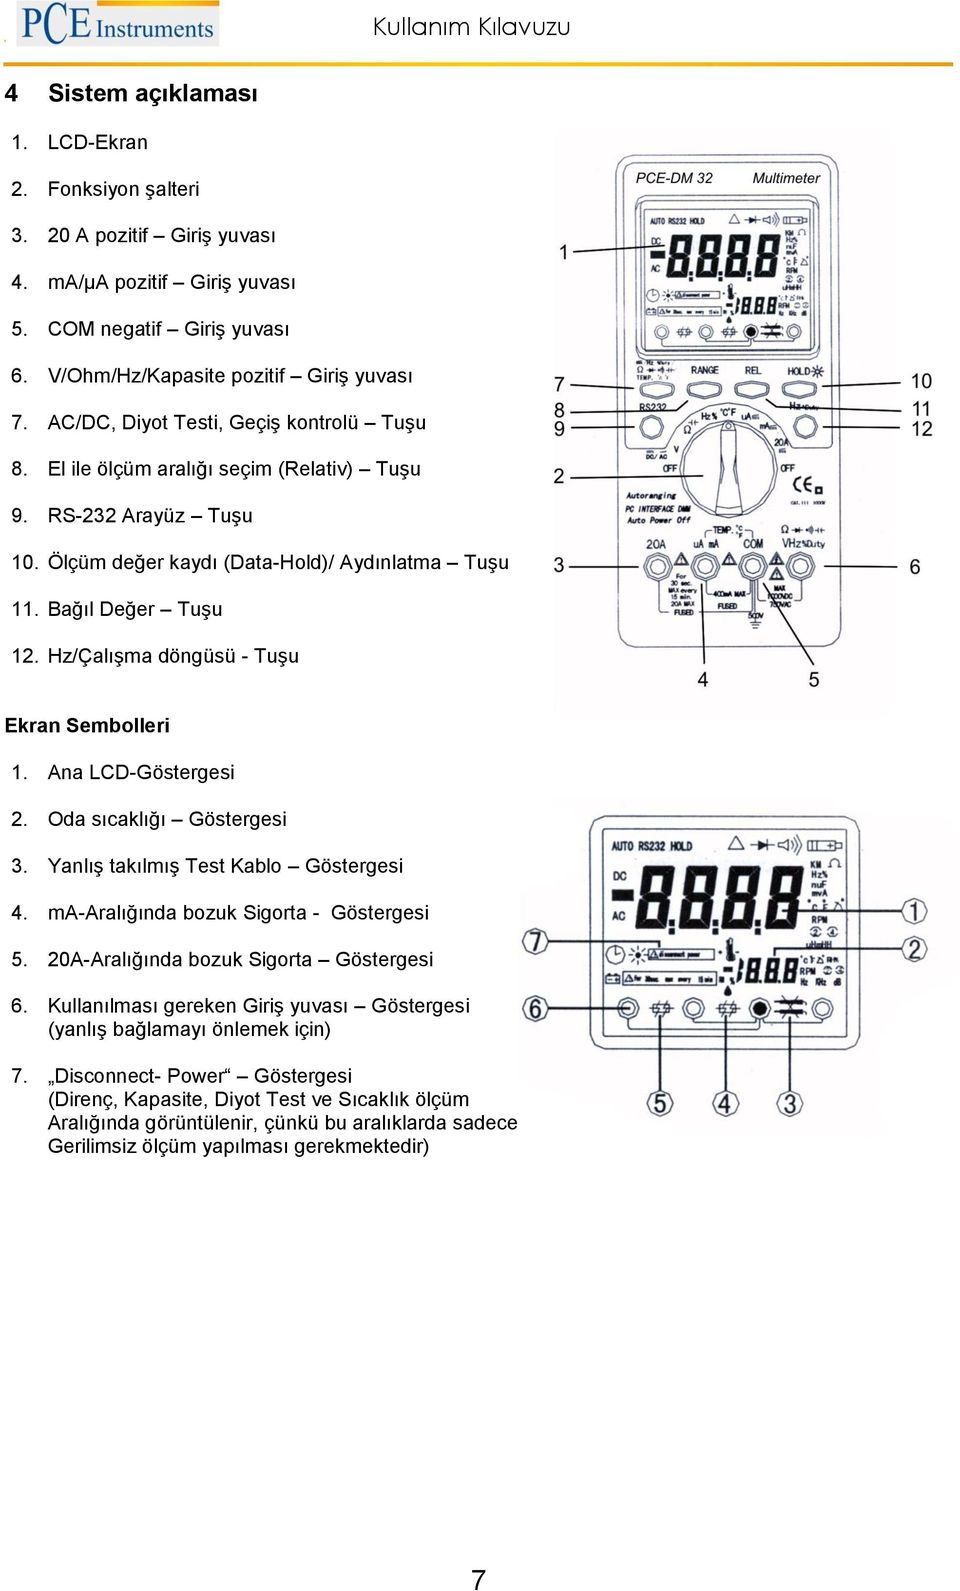 Hz/Çalışma döngüsü - Tuşu Ekran Sembolleri 1. Ana LCD-Göstergesi 2. Oda sıcaklığı Göstergesi 3. Yanlış takılmış Test Kablo Göstergesi 4. ma-aralığında bozuk Sigorta - Göstergesi 5.